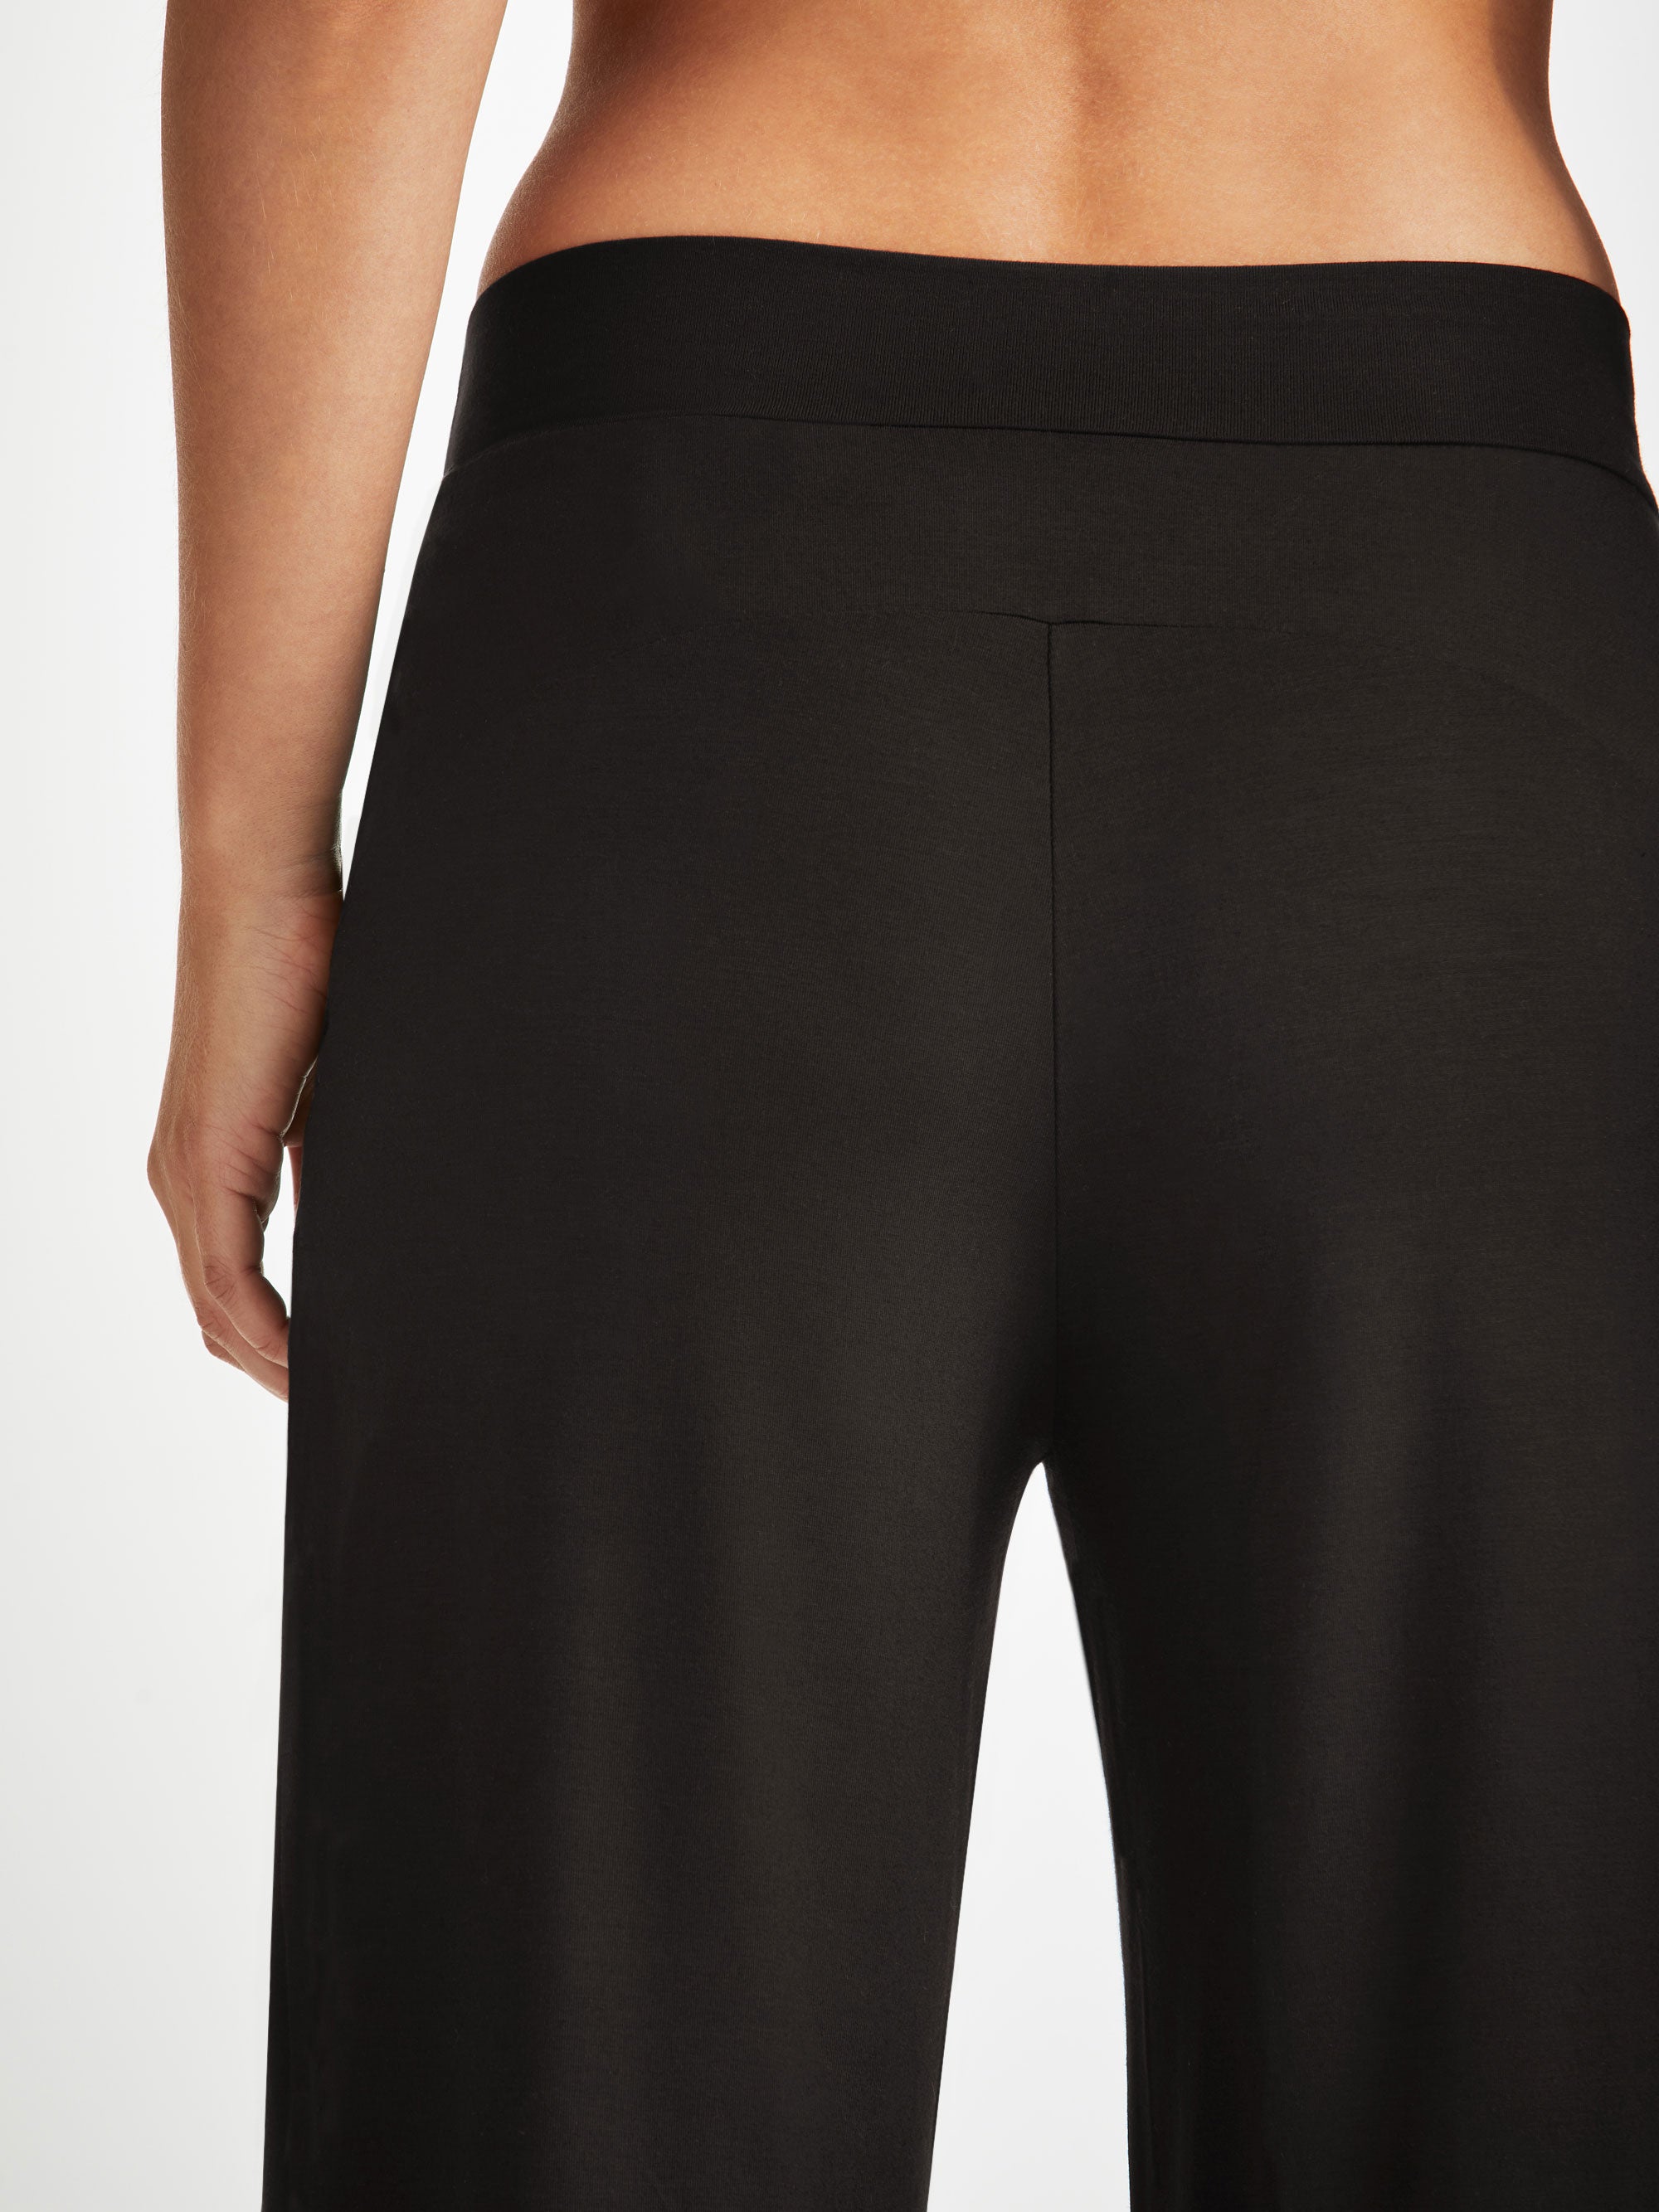 Basel Micro Modal Stretch Black Women's Lounge Trousers